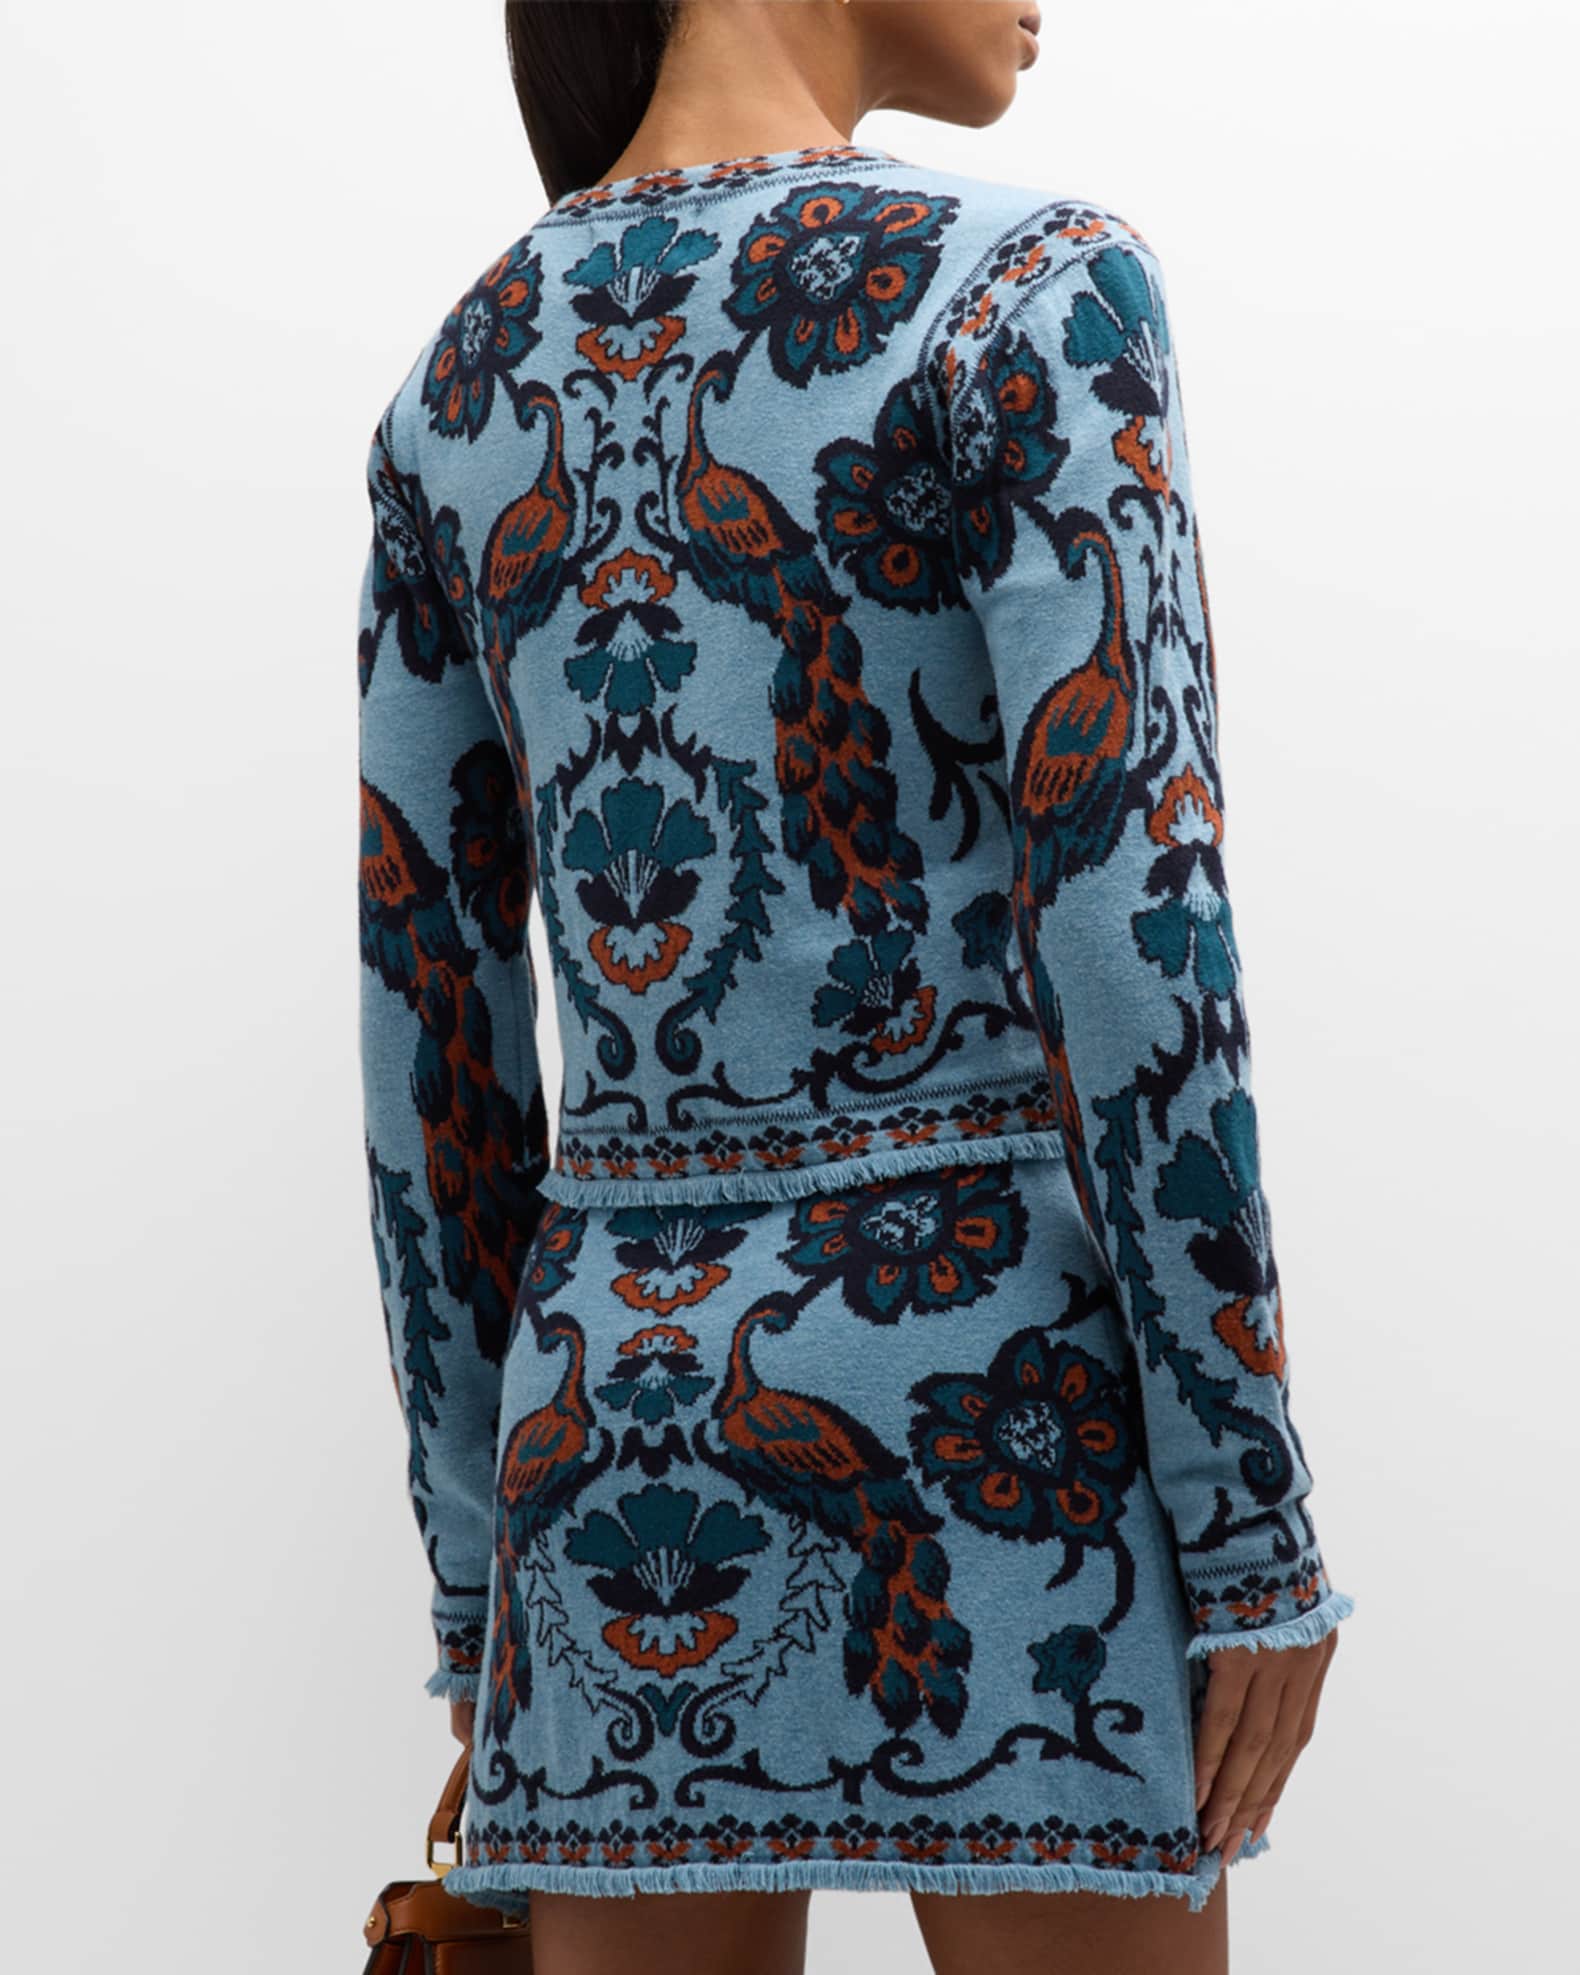 Cara Cara Livi Peacock Jacquard Wool-Blend Jacket | Neiman Marcus